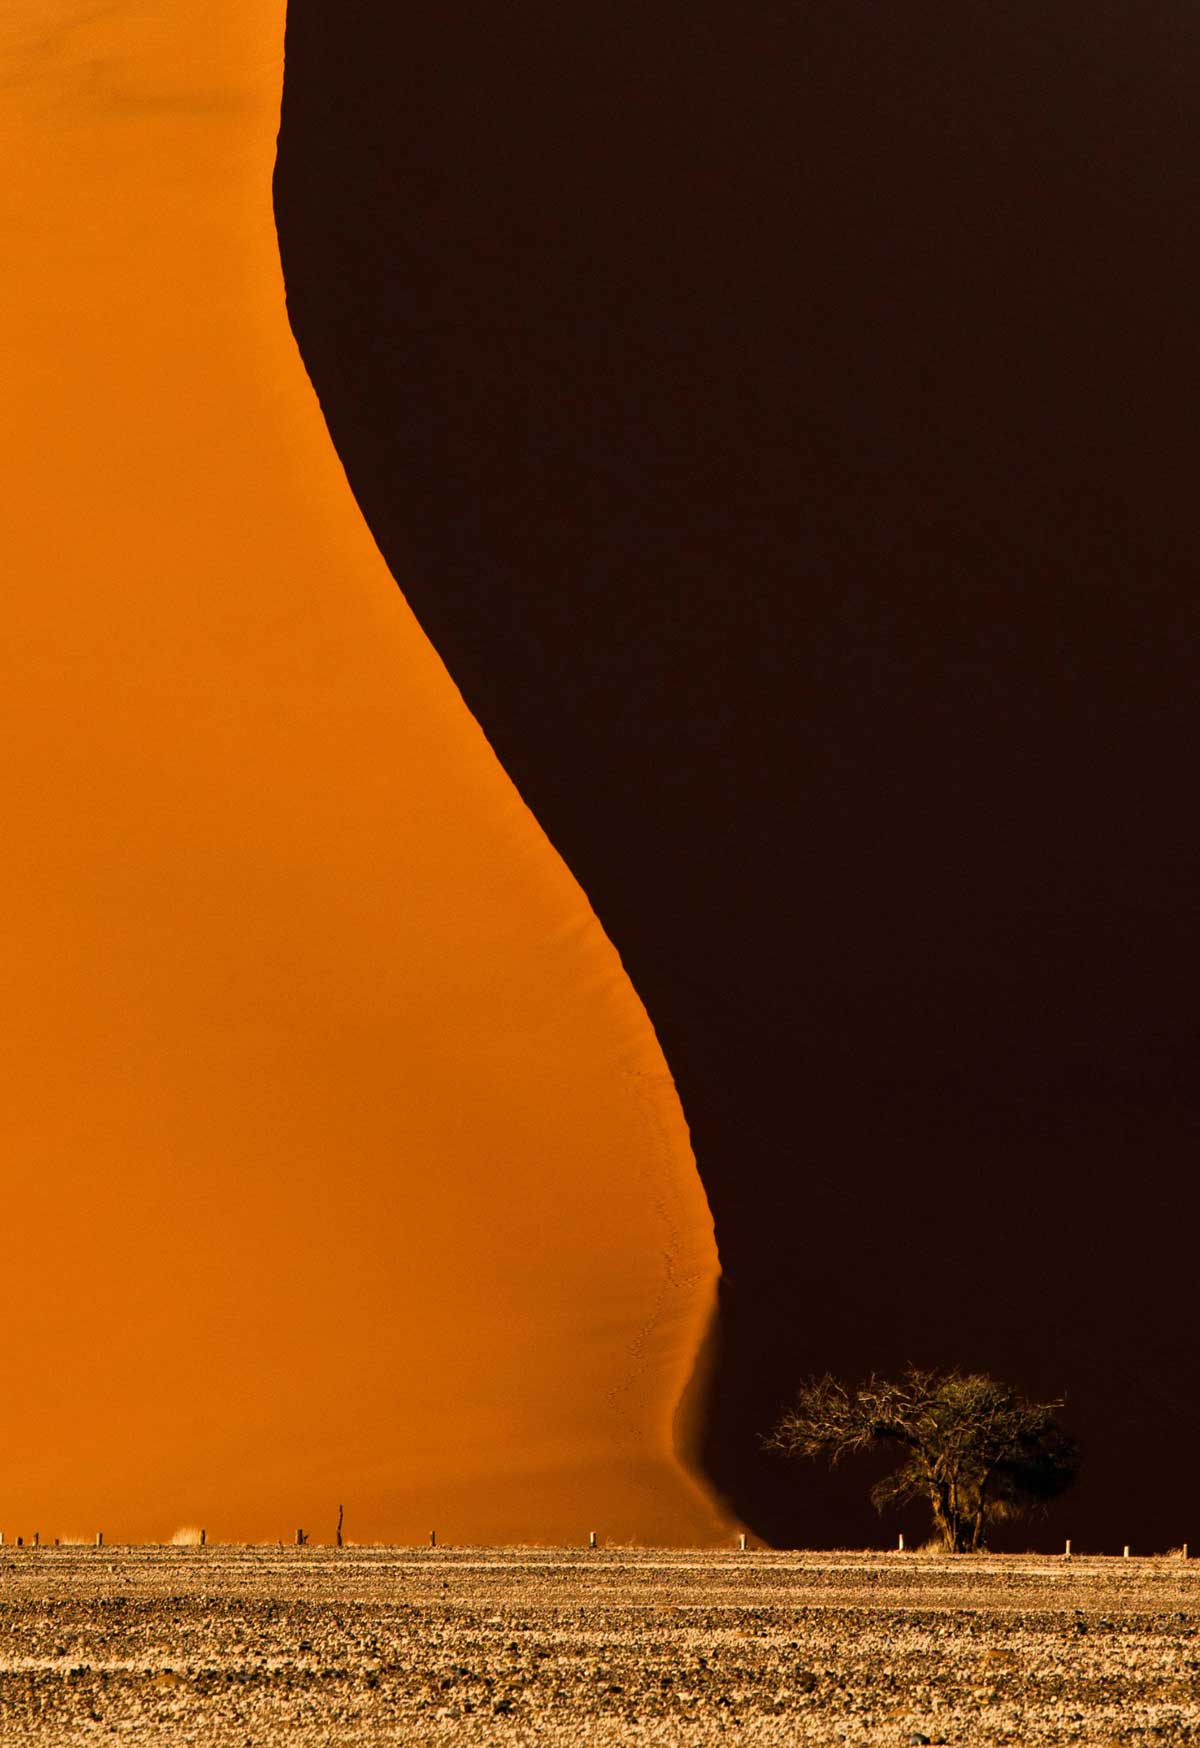 dune 40 namibia